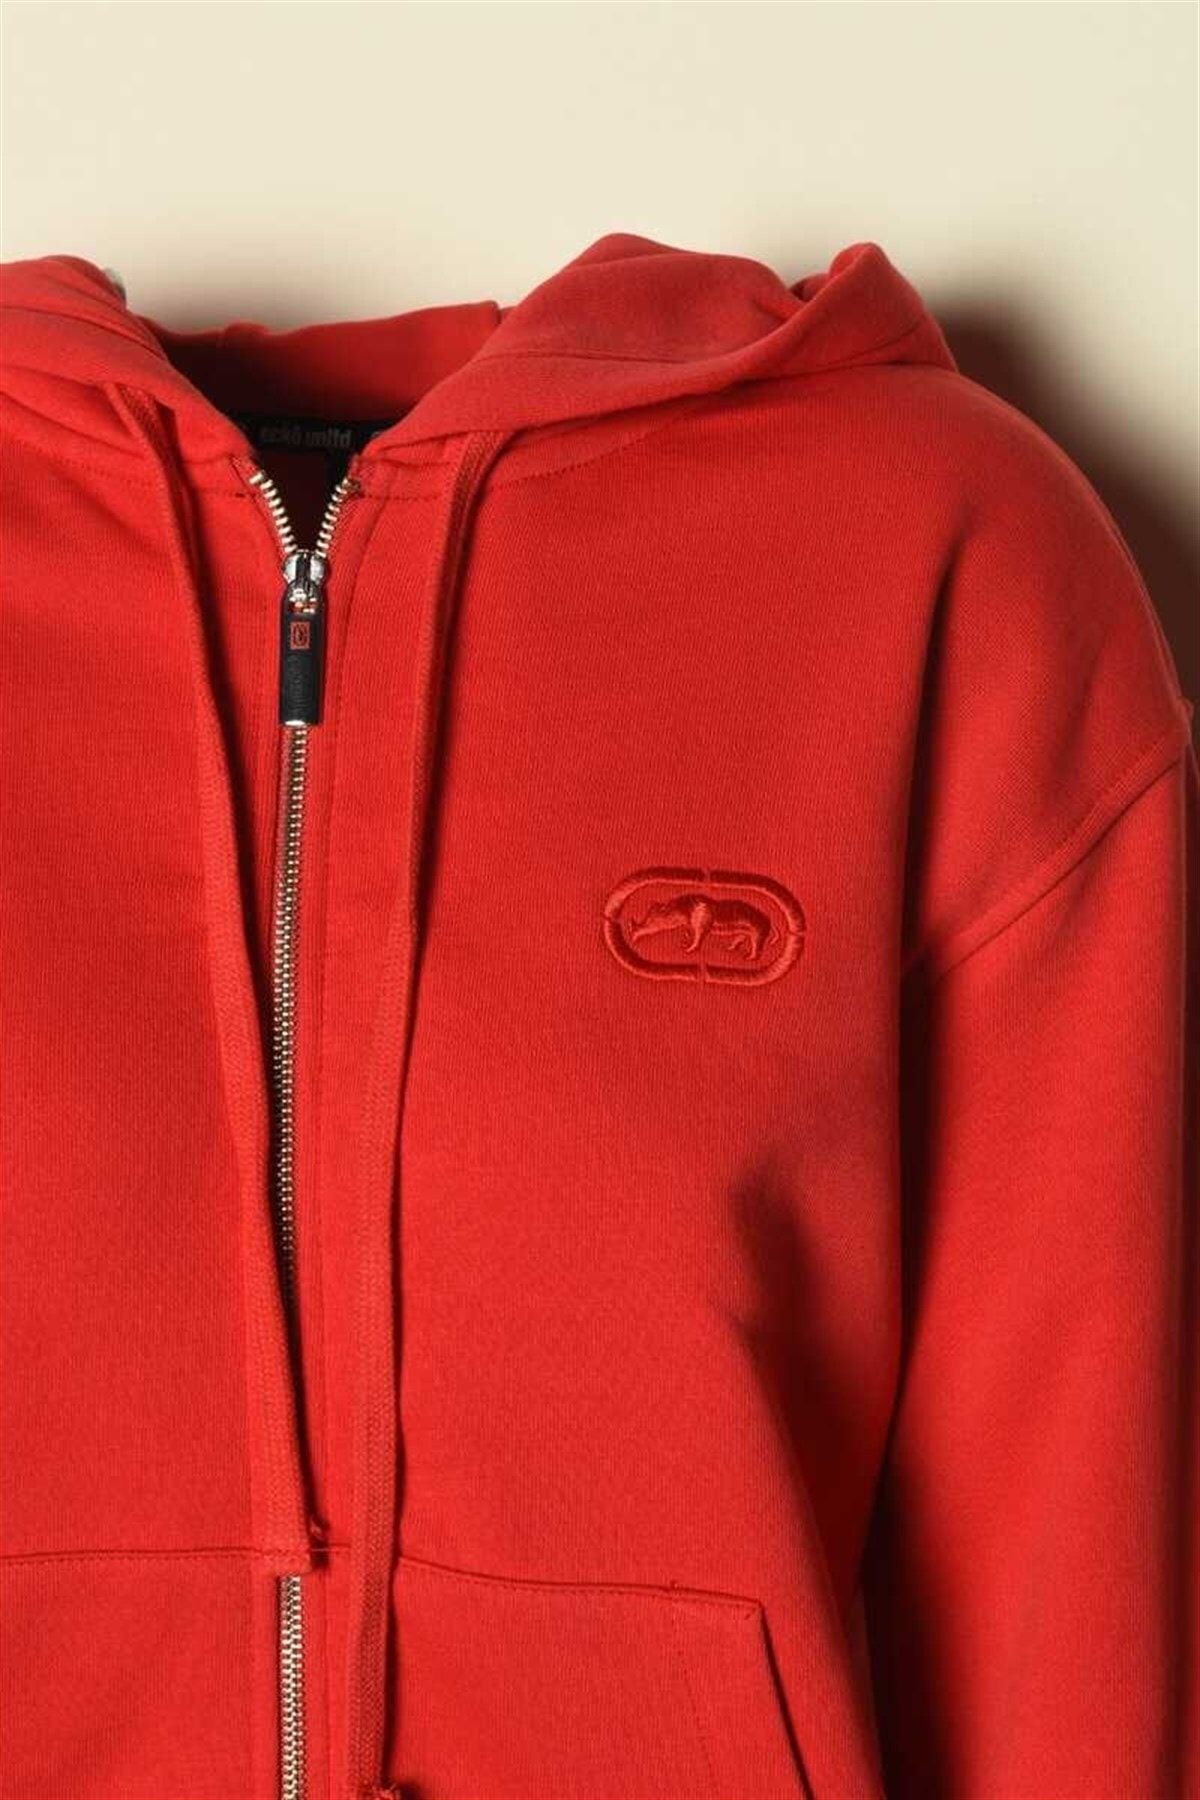 Ecko Unltd Ecko Red Sıdney Kadın Sweatshirt